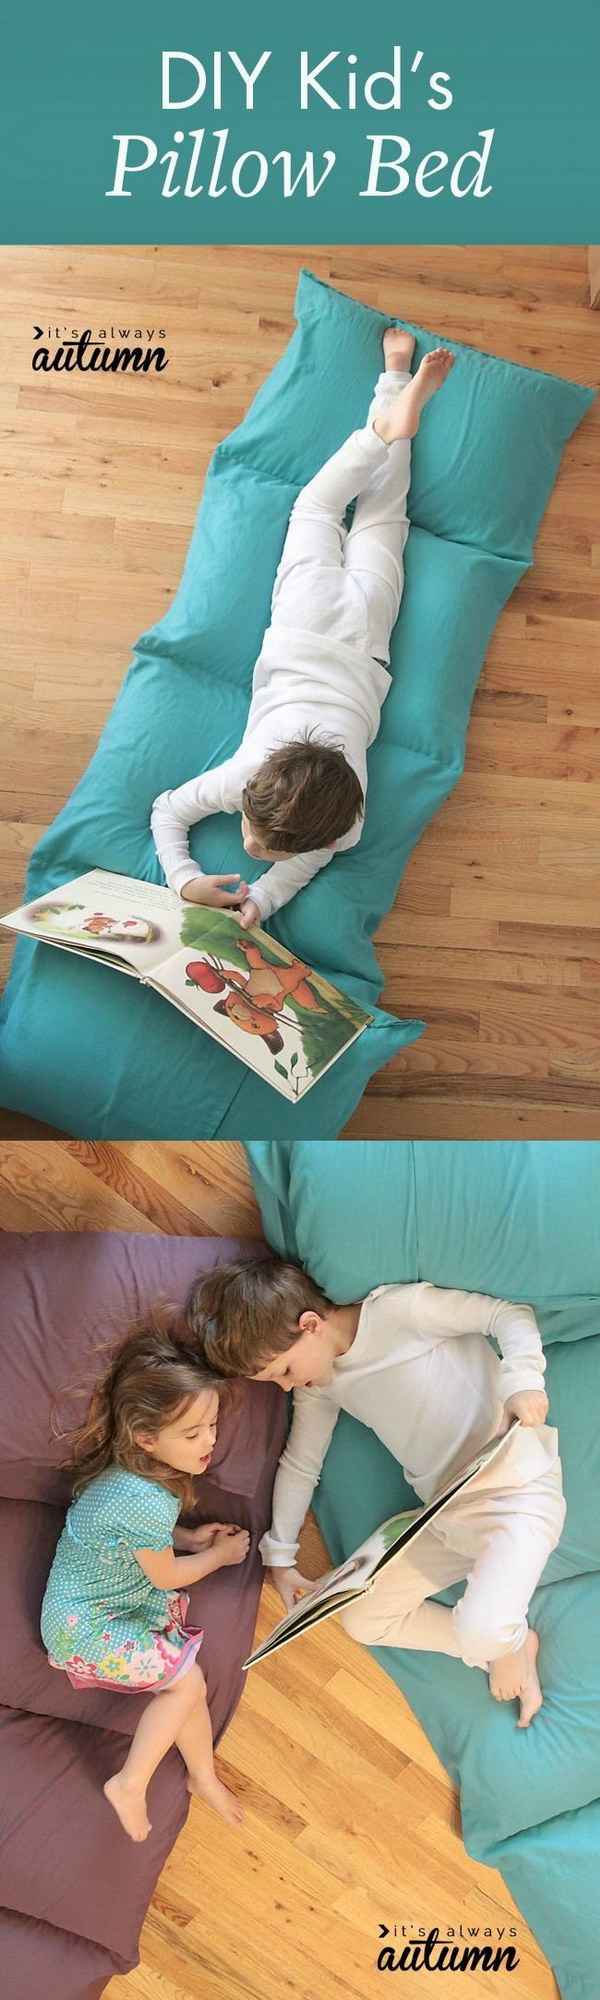 DIY Kid's Pillow Bed 